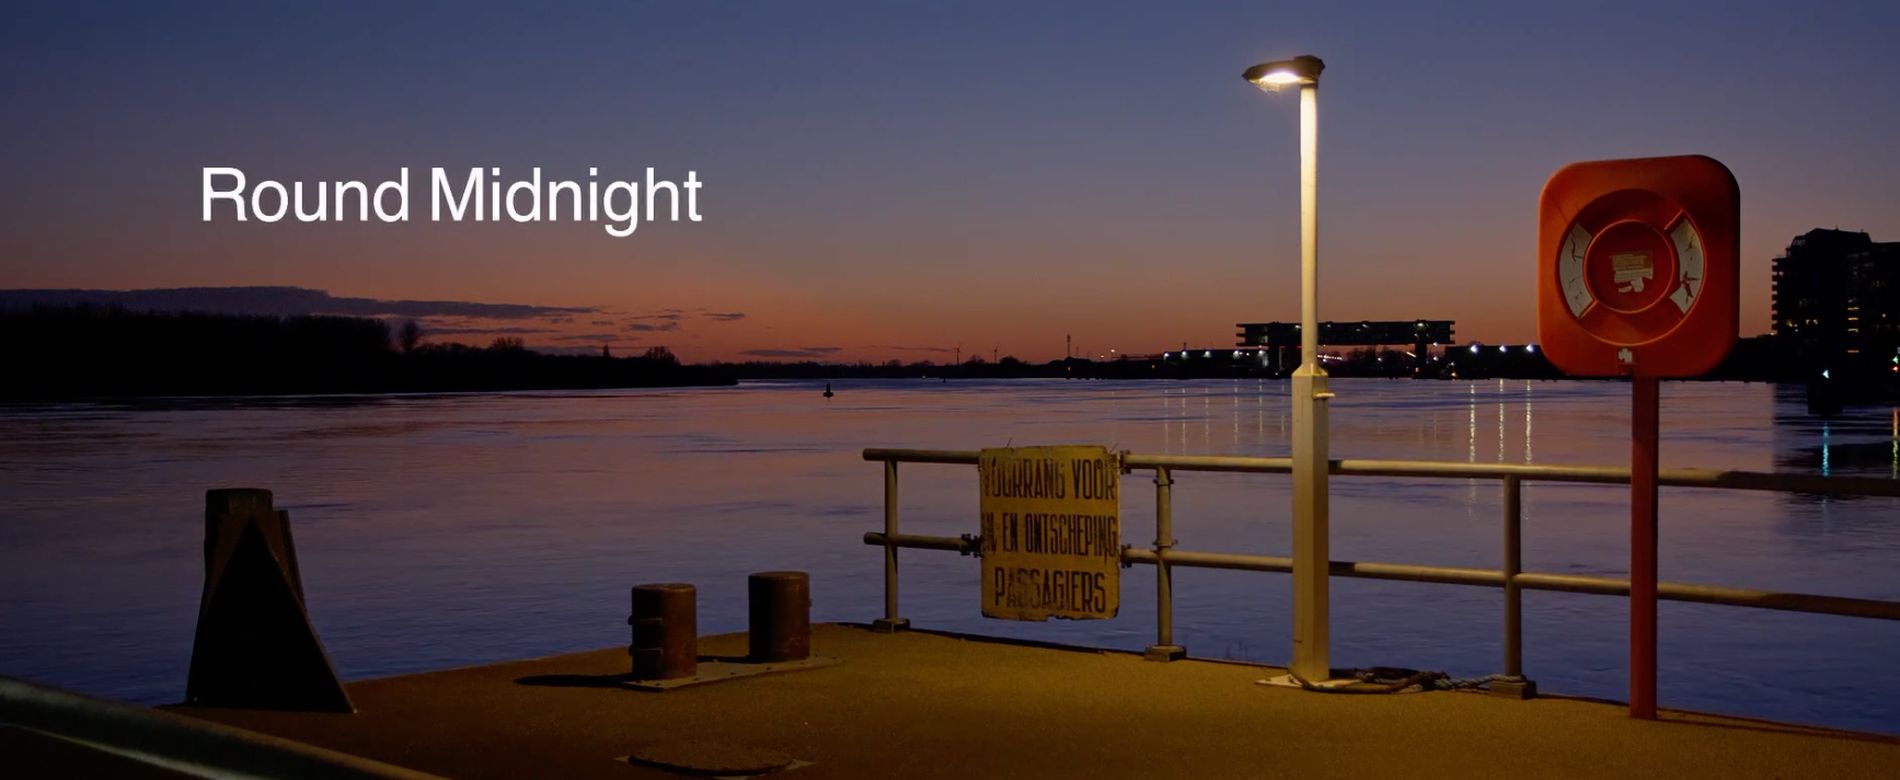 images/films/Round%20Midnight.jpg#joomlaImage://local-images/films/Round Midnight.jpg?width=1900&height=780